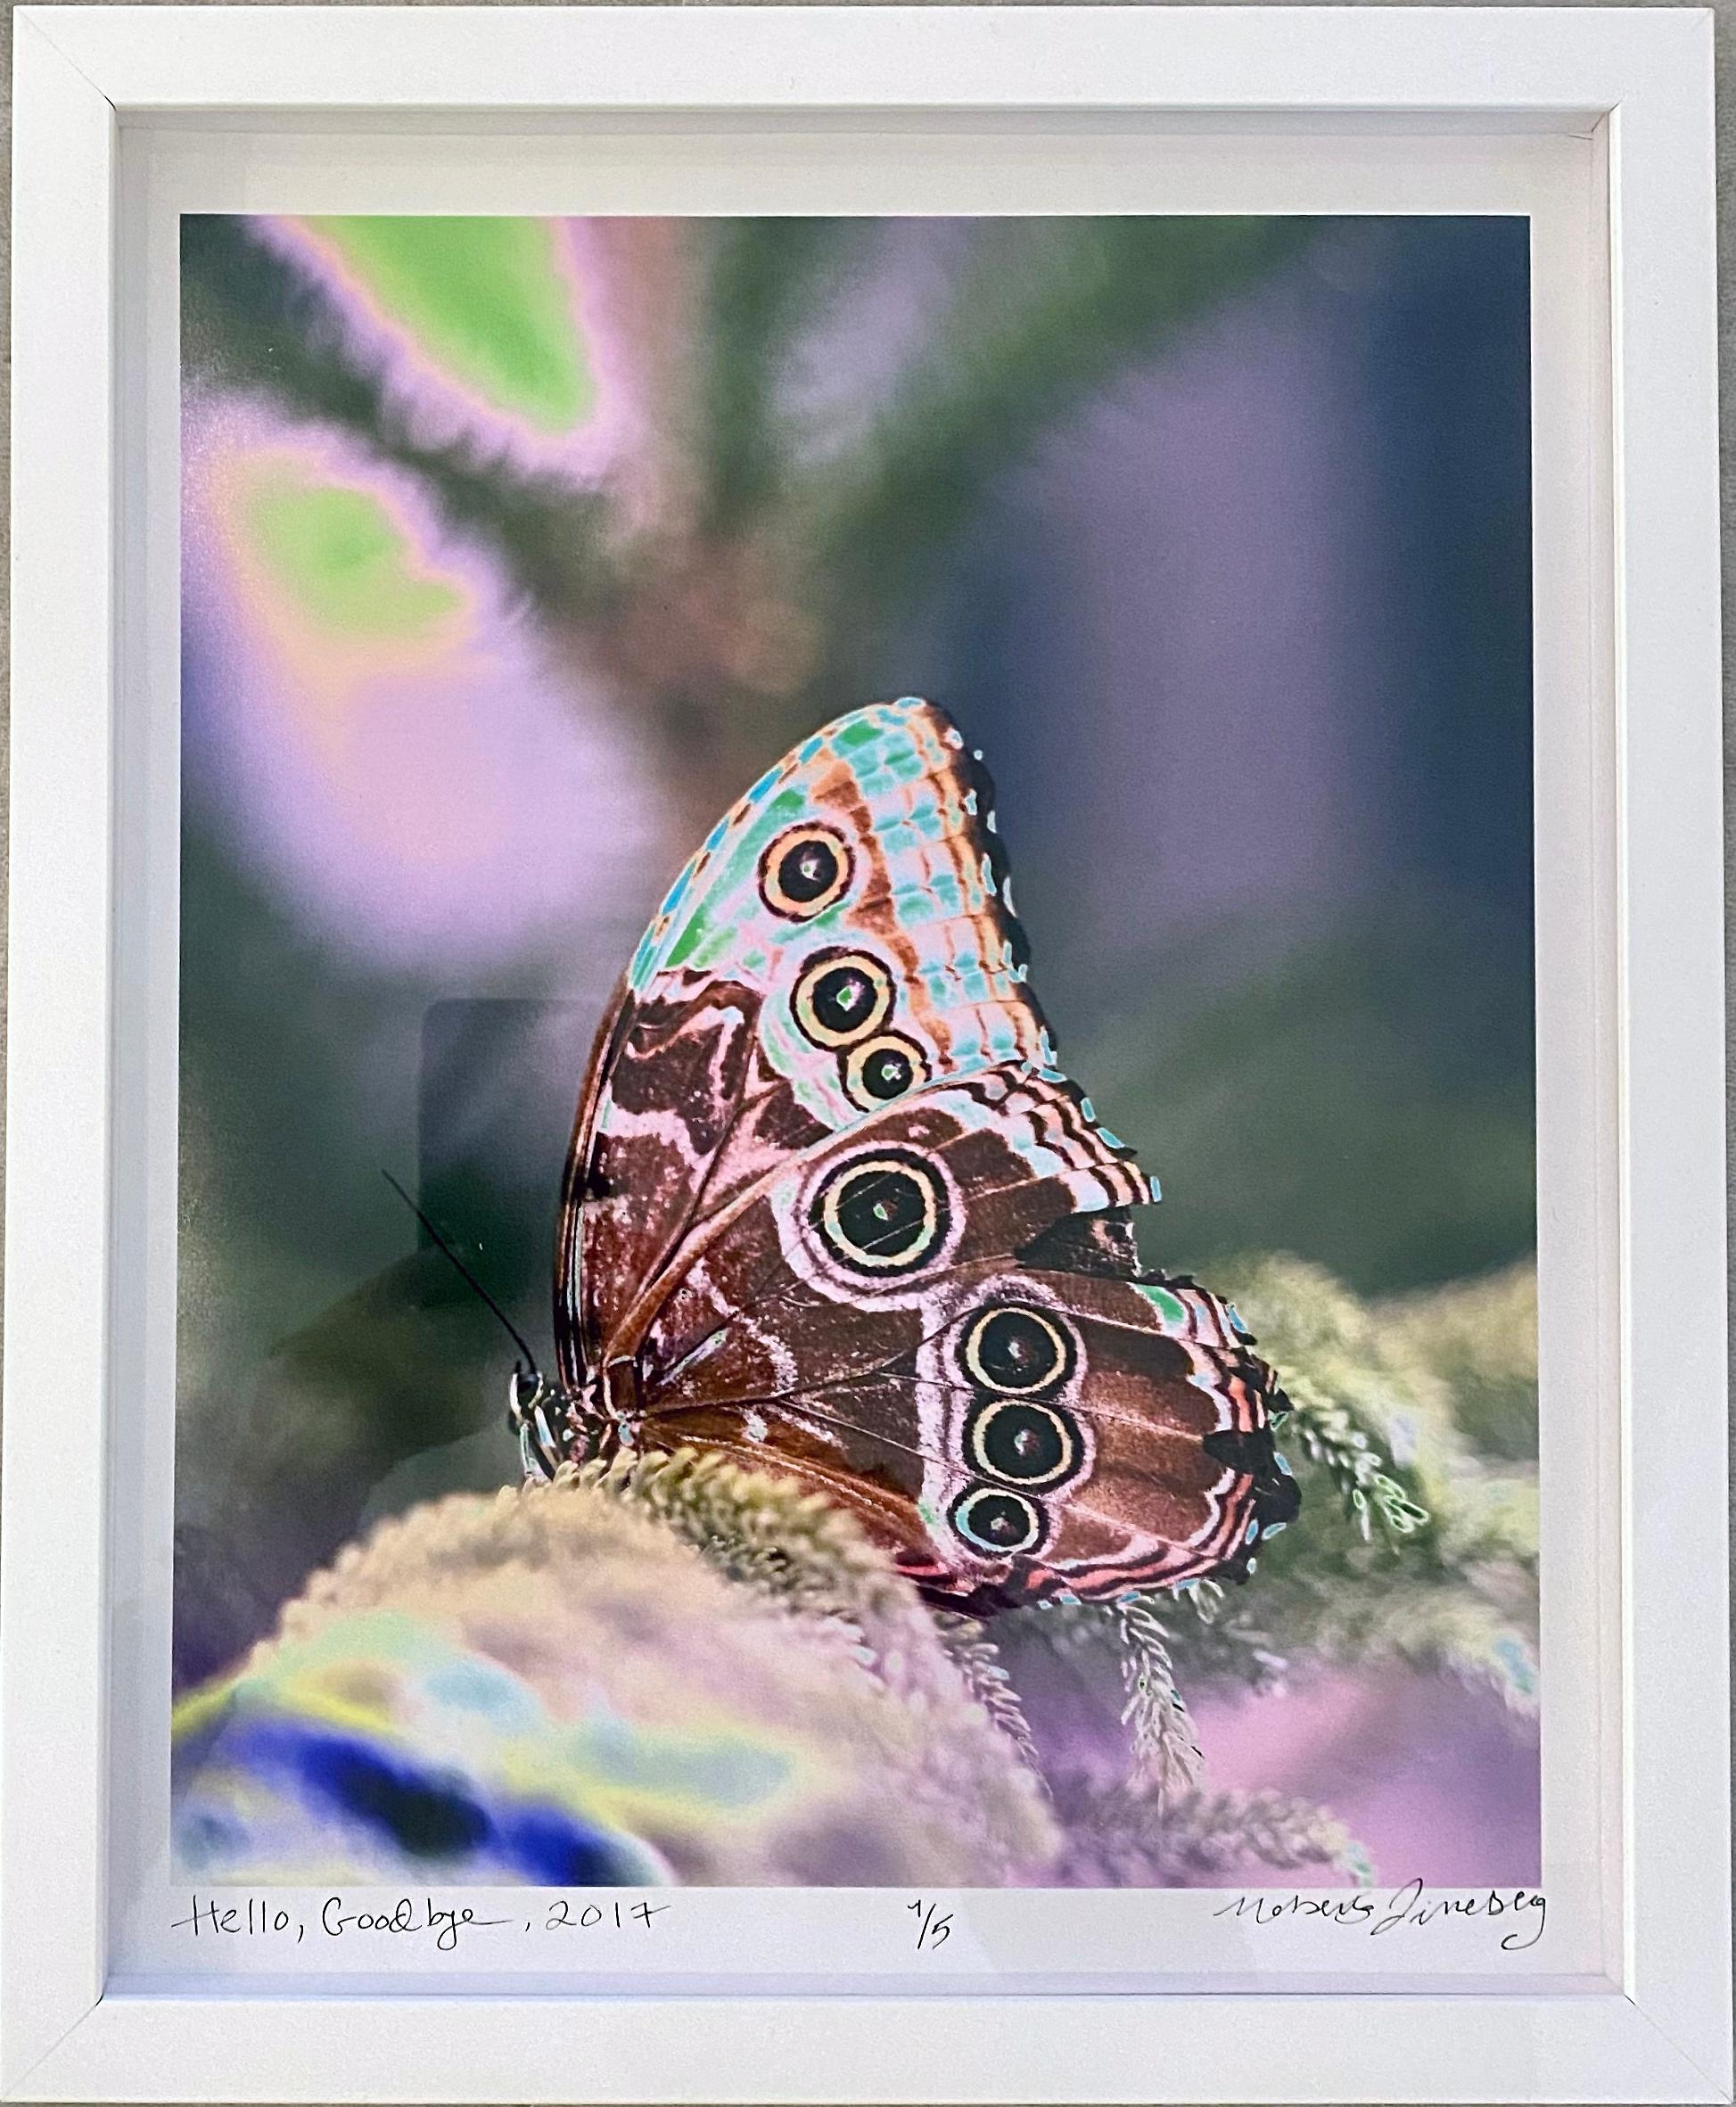 Hallo, Auf Wiedersehen, Contemporary Photography Butterfly Series (Grau), Still-Life Photograph, von Roberta Fineberg